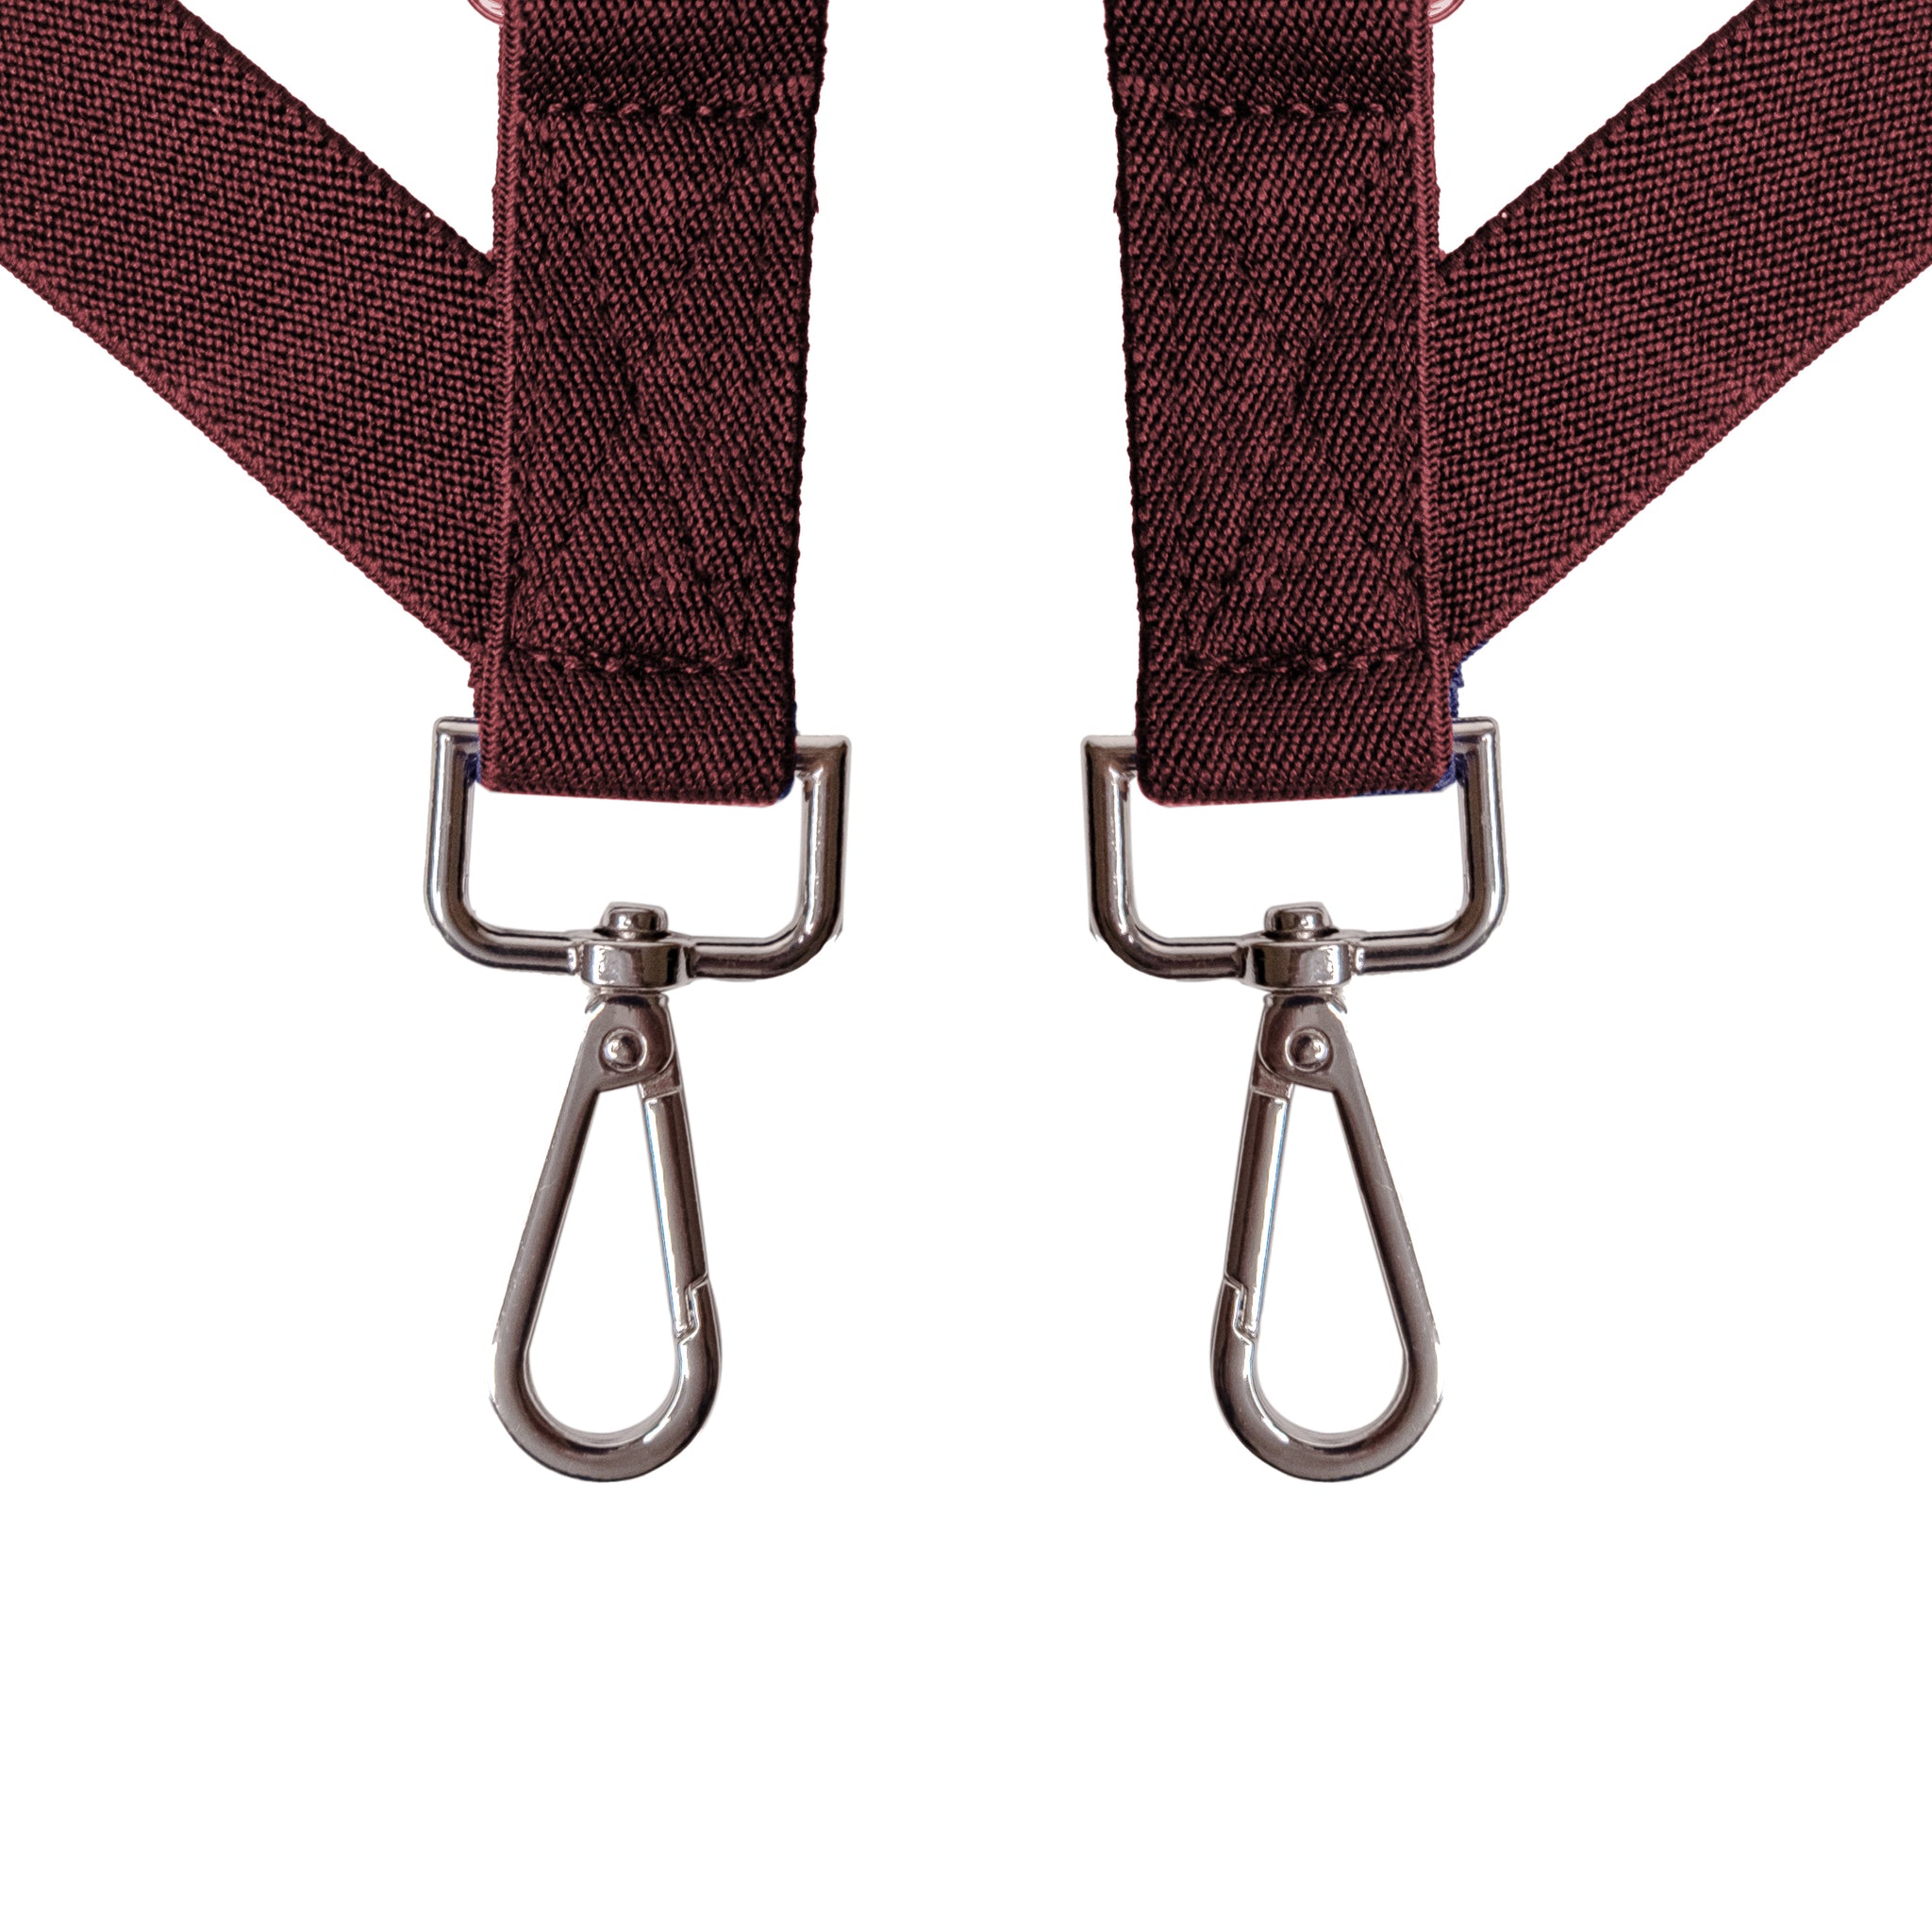 Chokore X-shaped Snap Hook Suspenders (Wine Red)